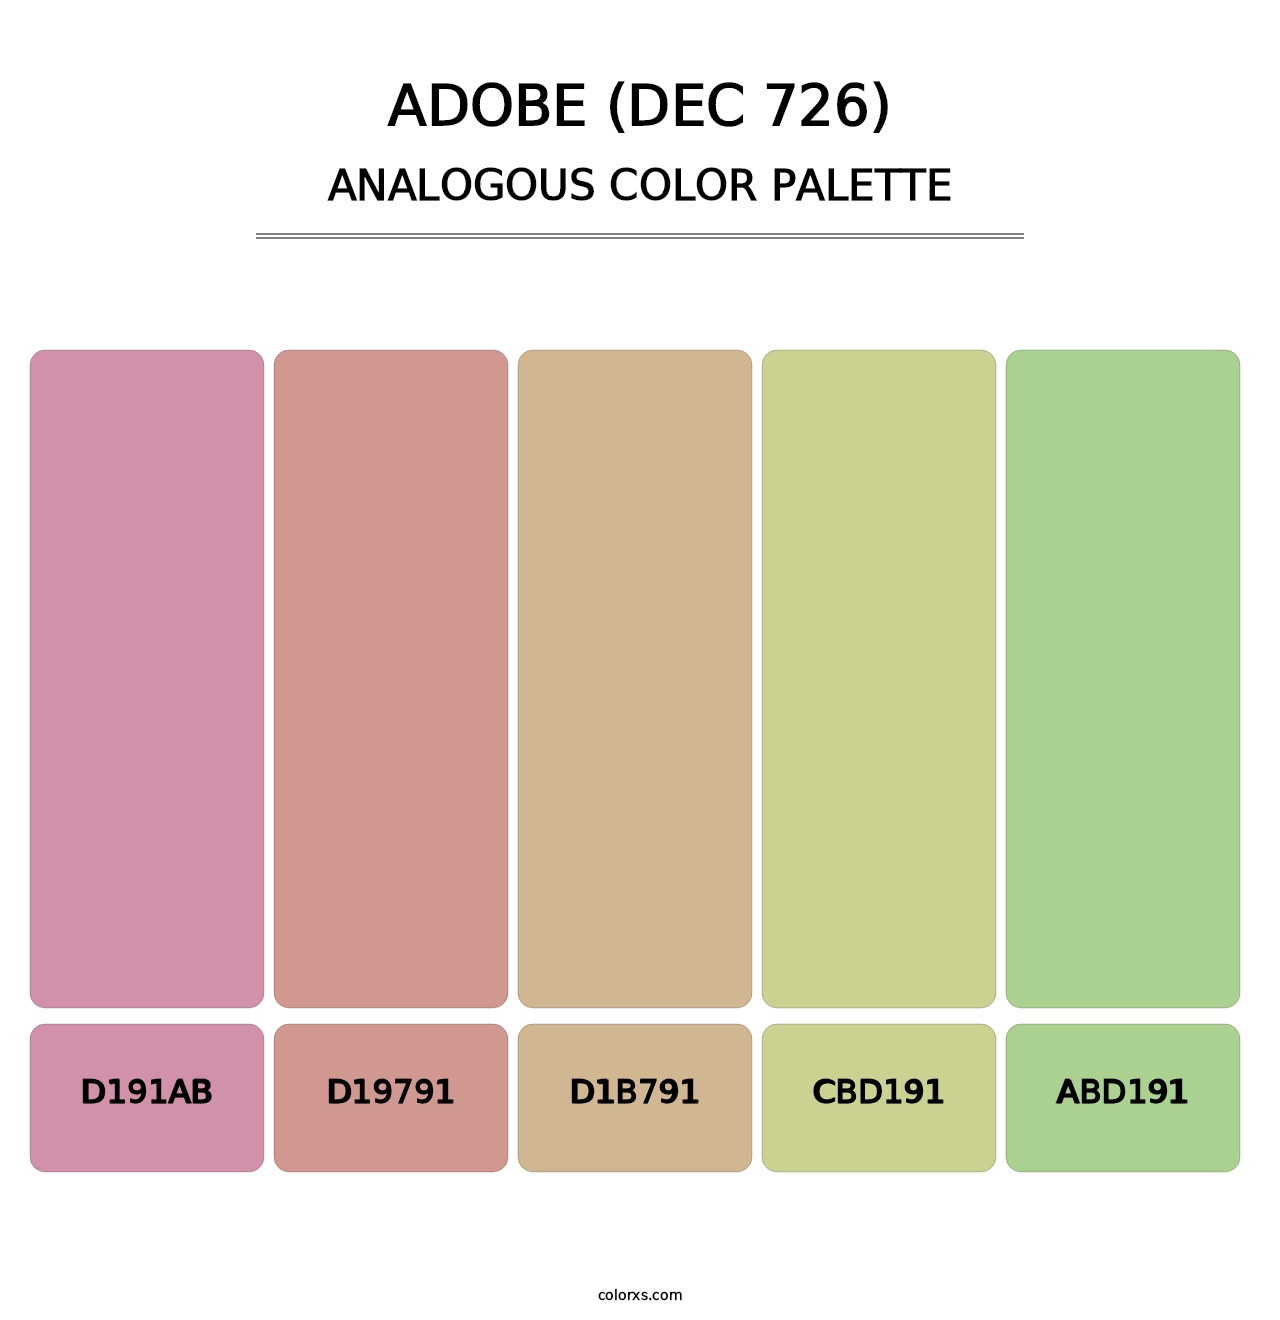 Adobe (DEC 726) - Analogous Color Palette